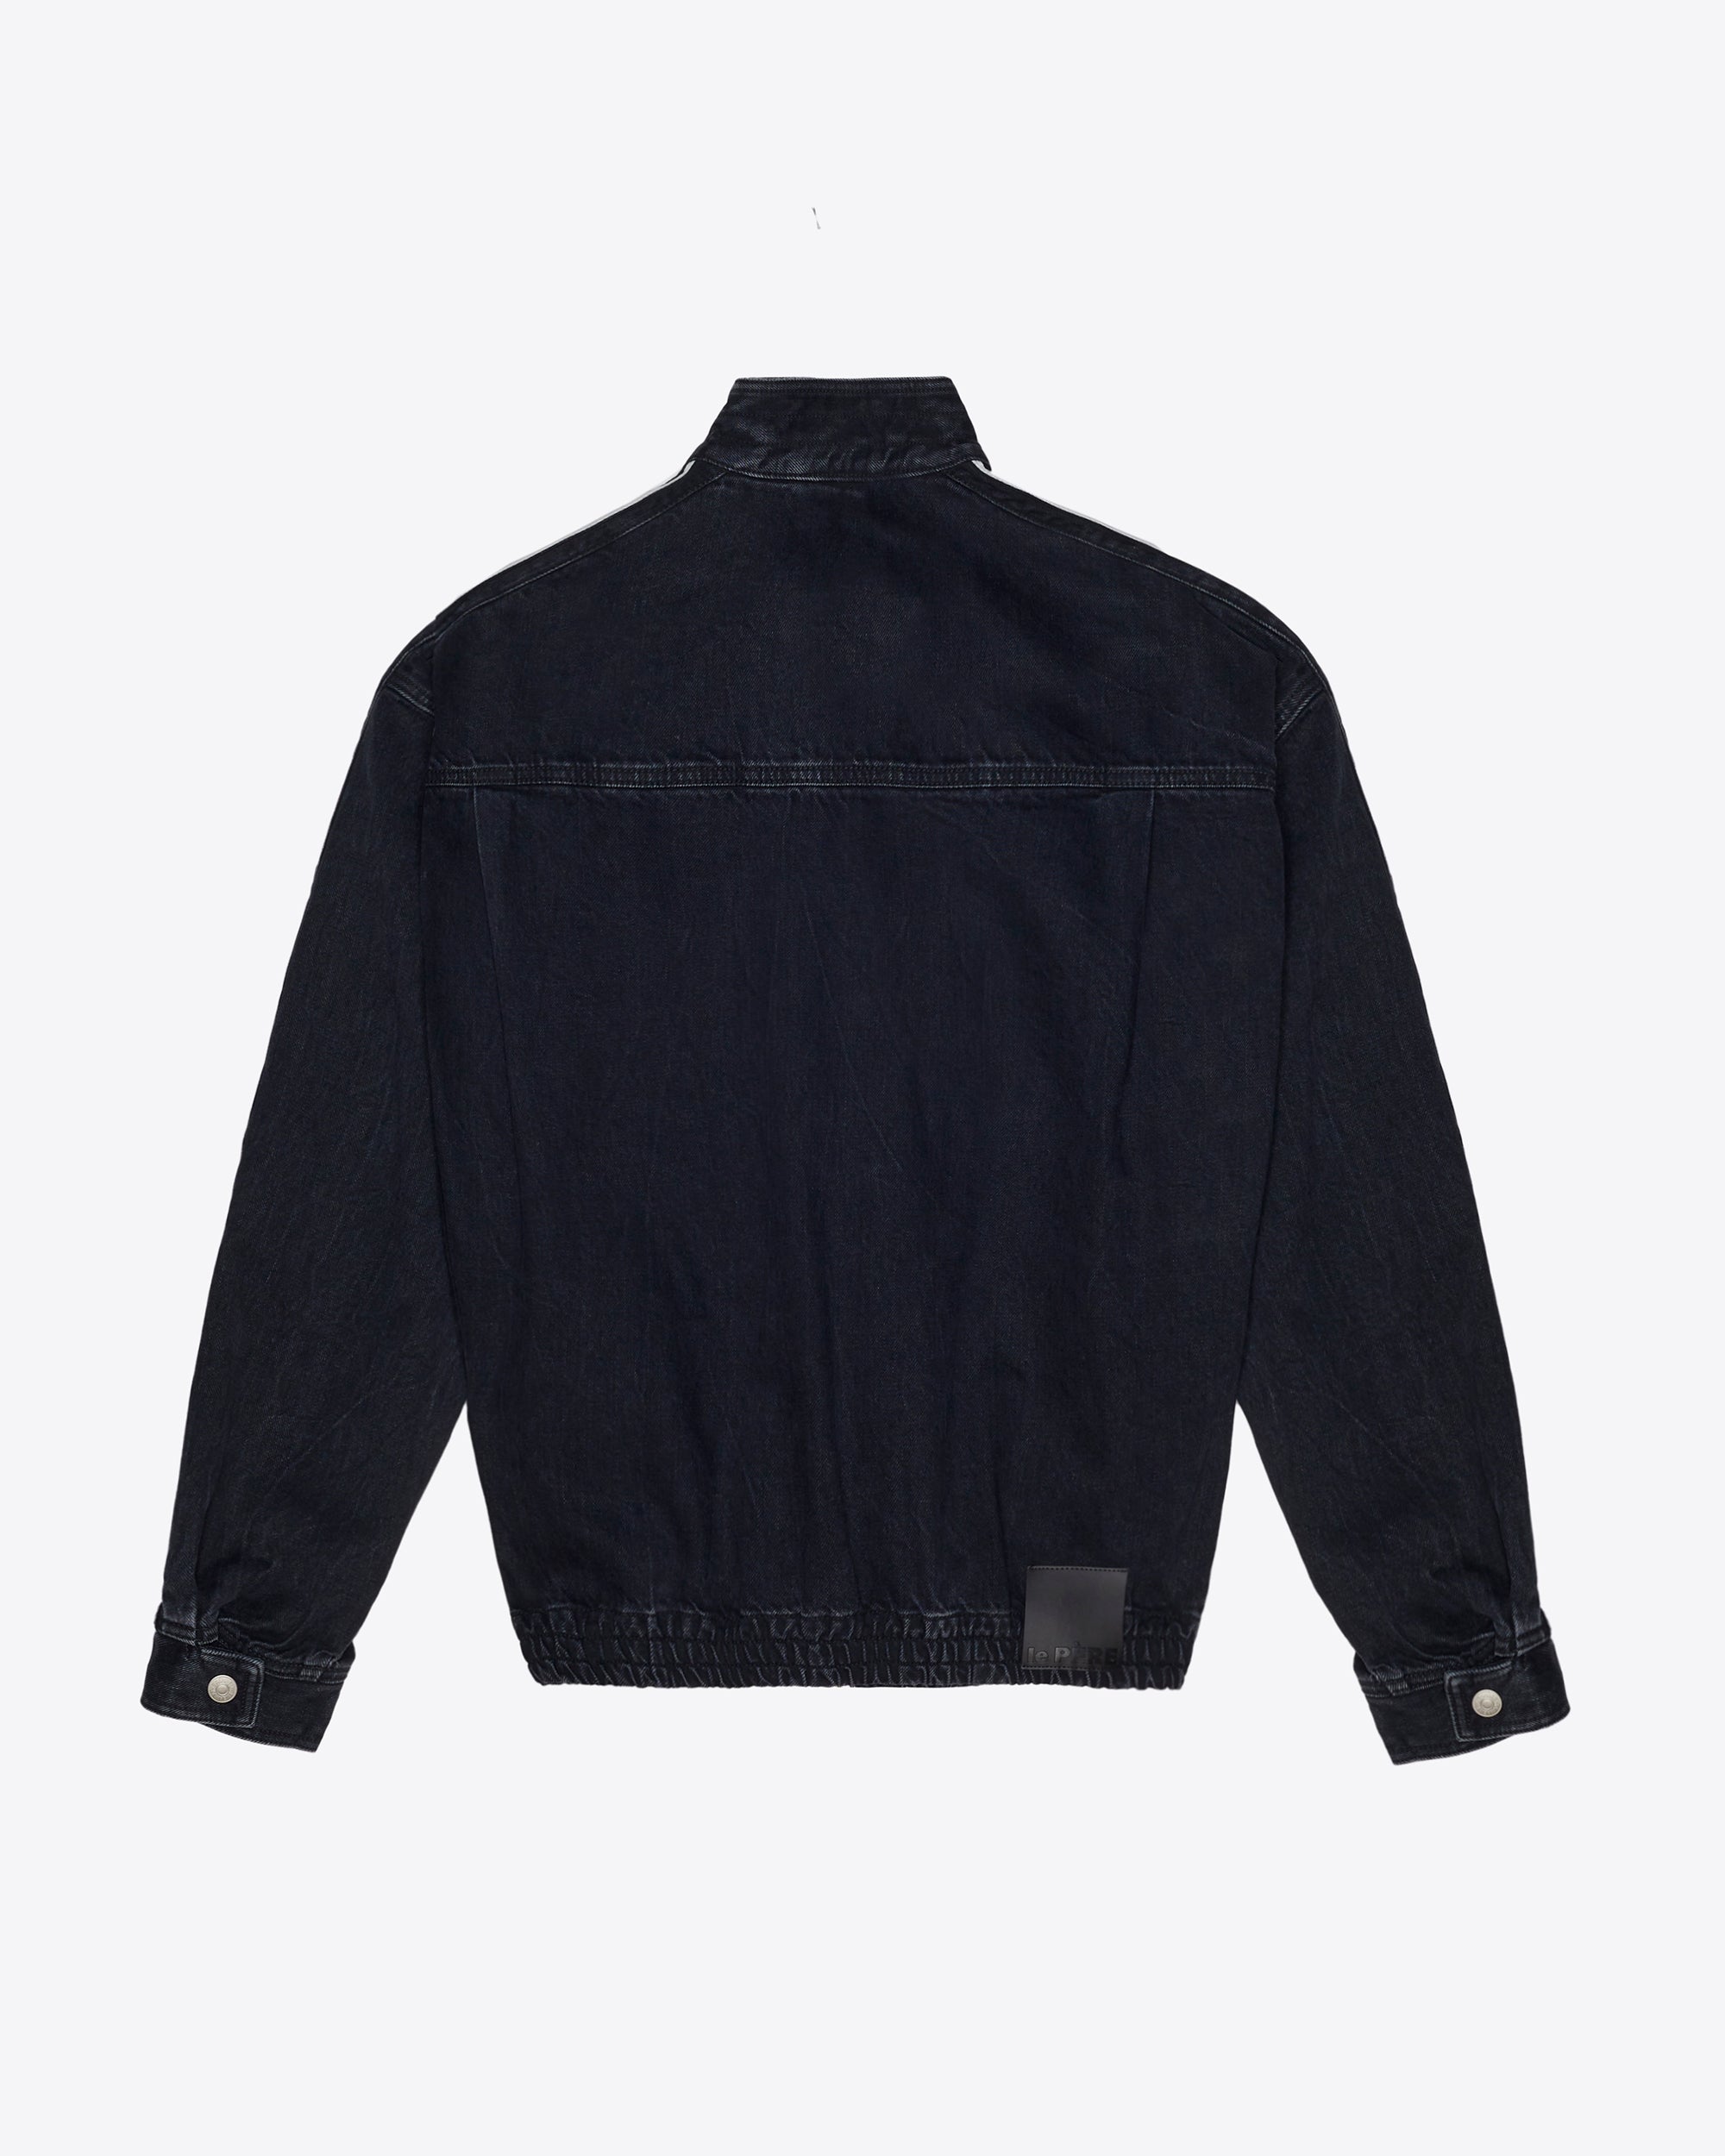 Plus Size Black Washed Distressed Denim Jacket | Yours Clothing